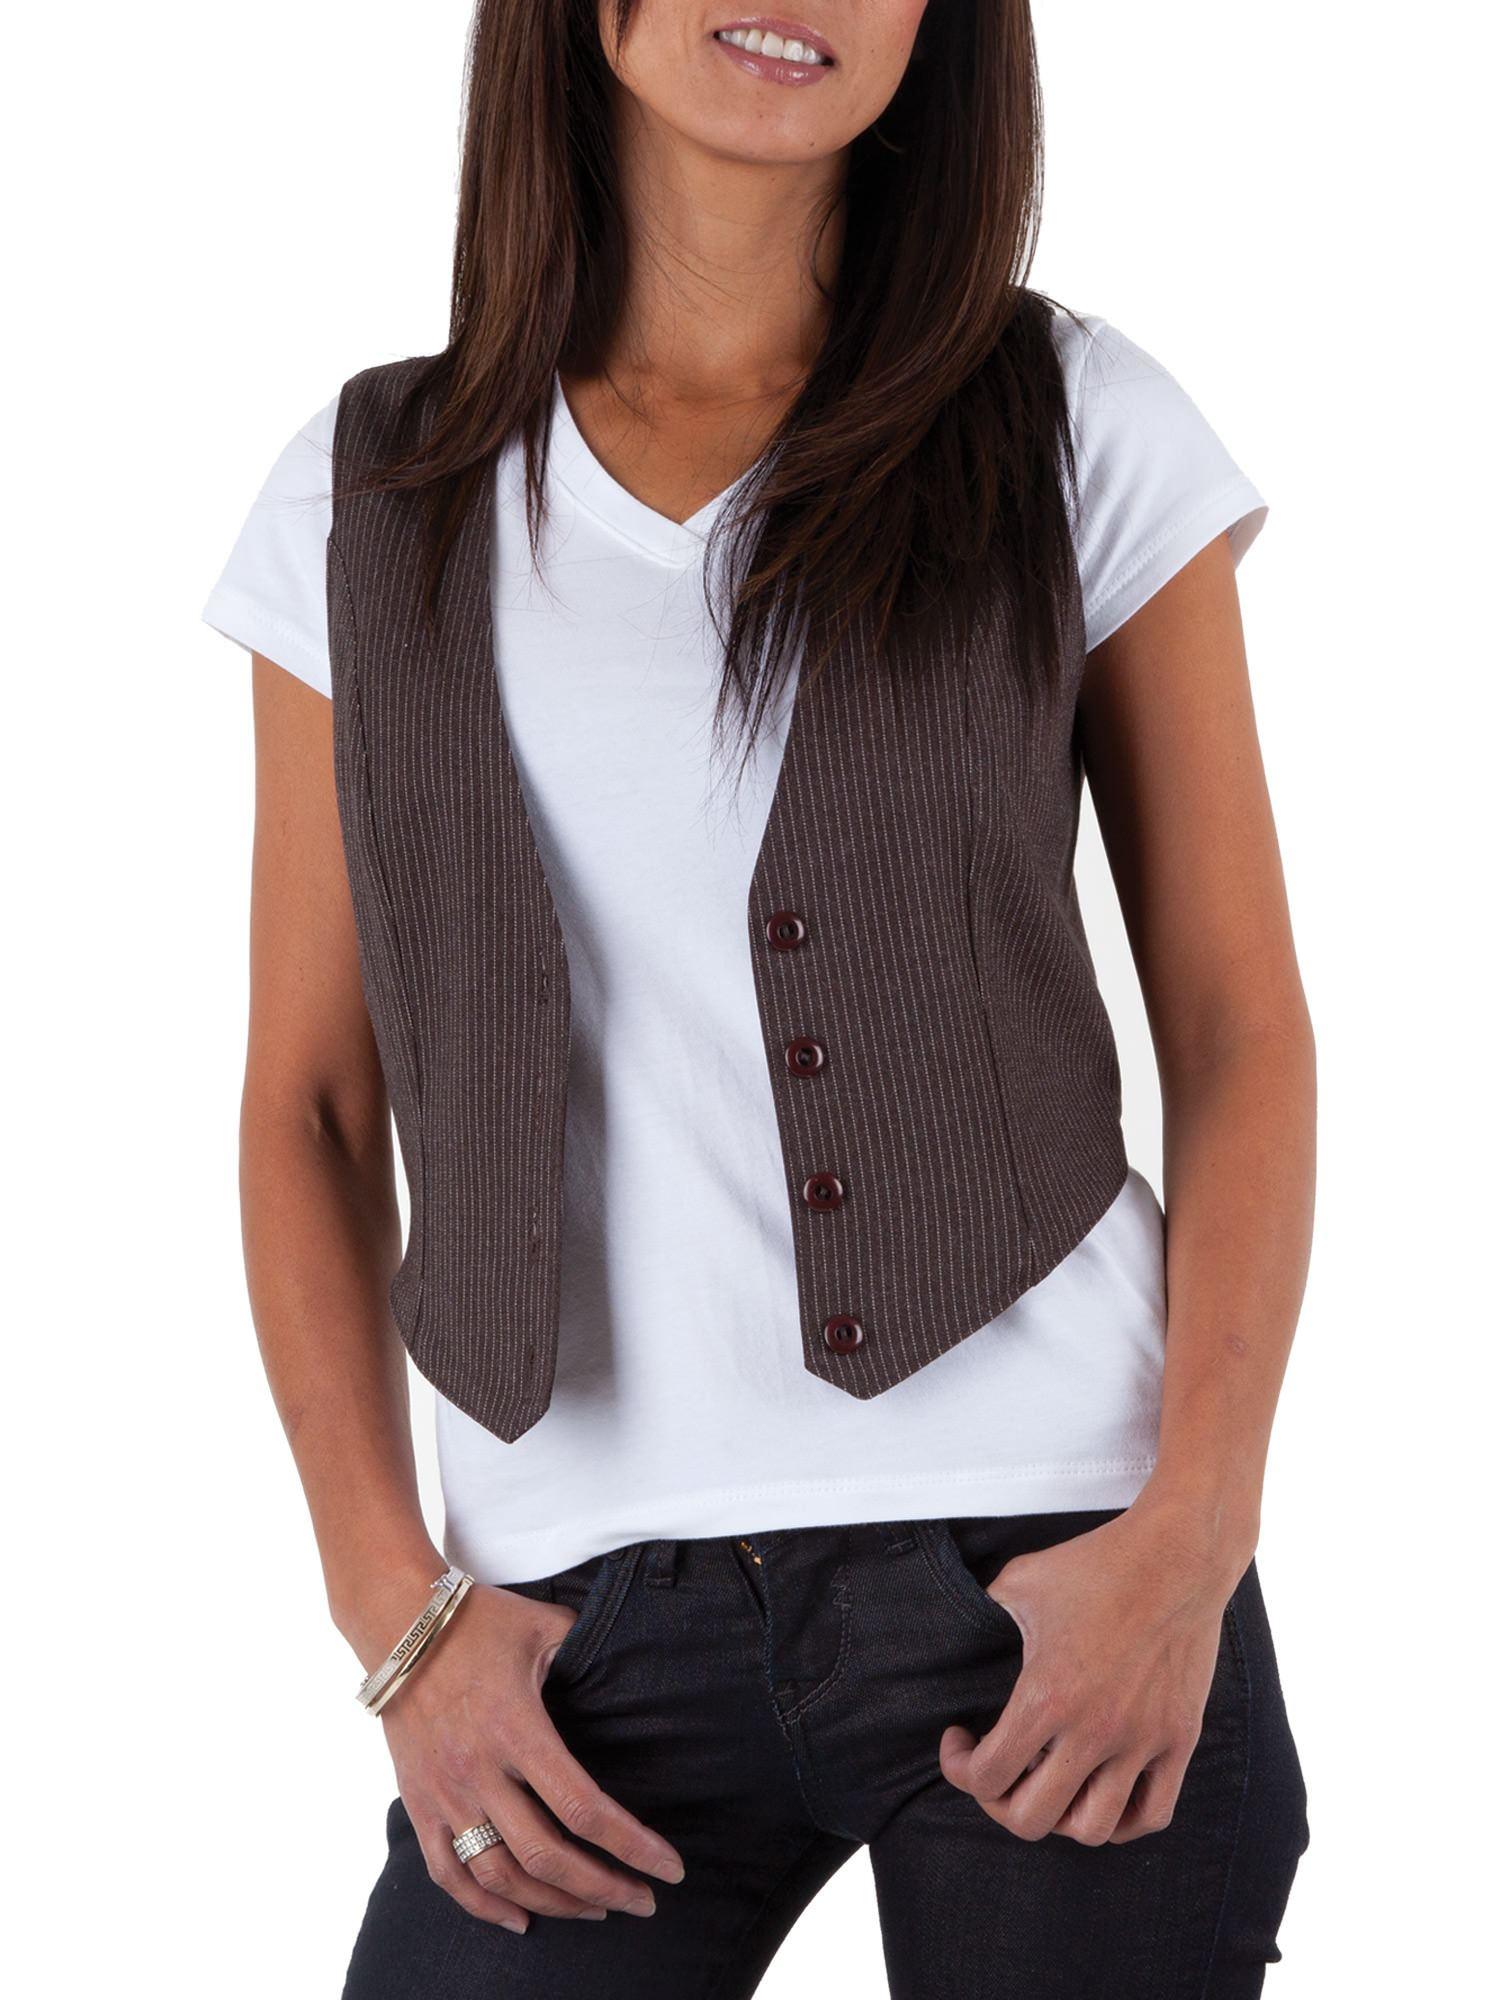 https://jalie.com/cdn/shop/products/3129-women-s-vests-jalie-1.jpg?v=1695301496